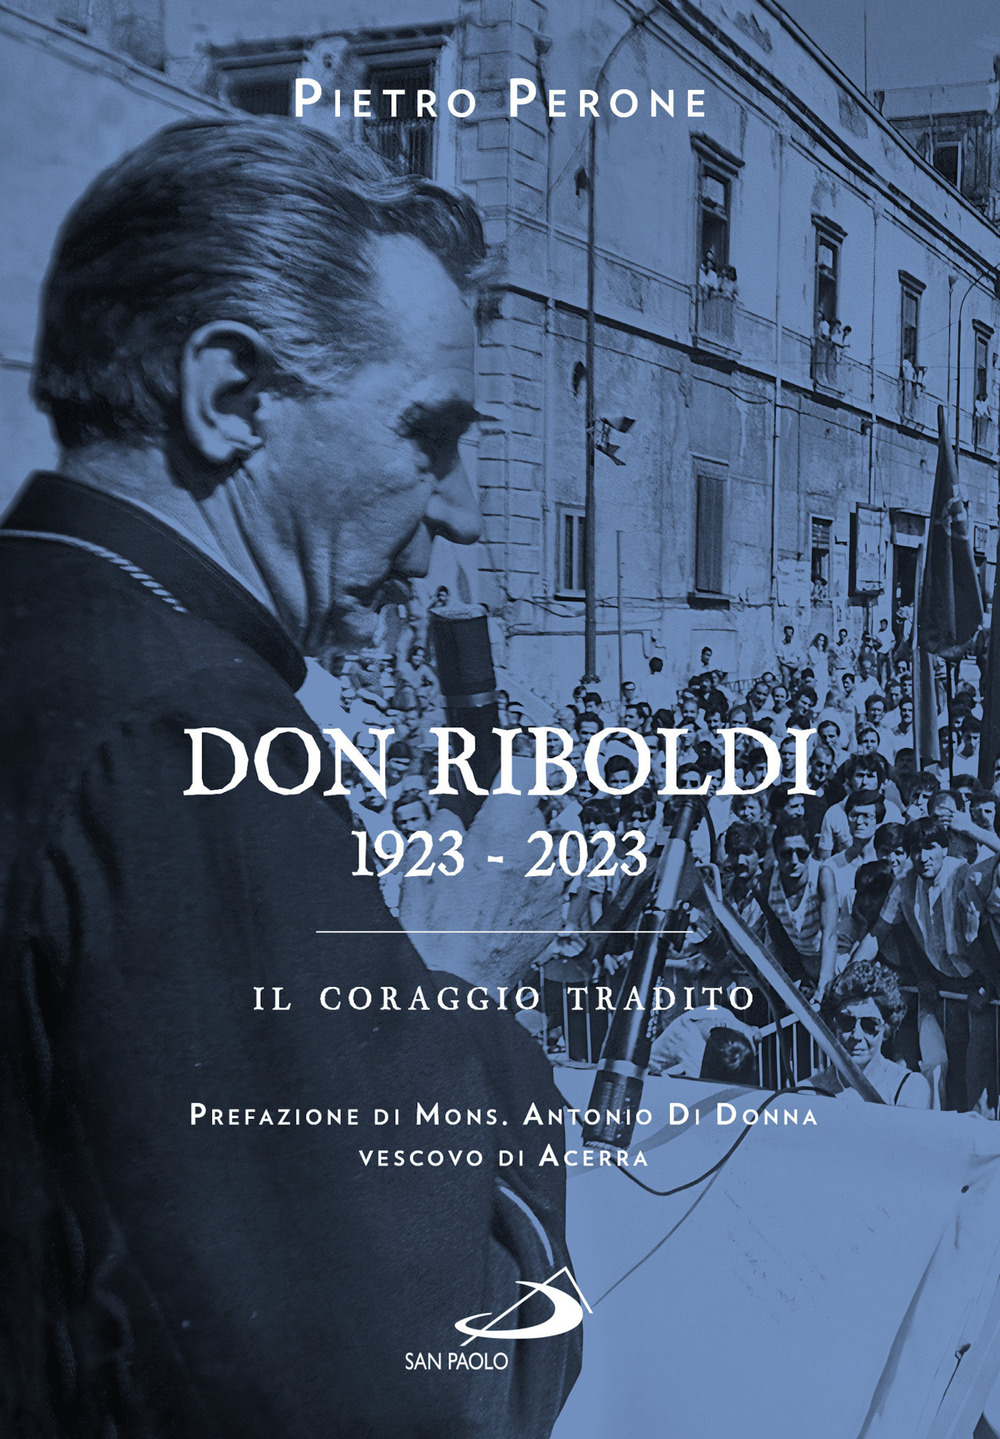 Libri Perone Pietro - Don Riboldi. 1923-2023. Il Coraggio Tradito NUOVO SIGILLATO, EDIZIONE DEL 10/11/2022 SUBITO DISPONIBILE